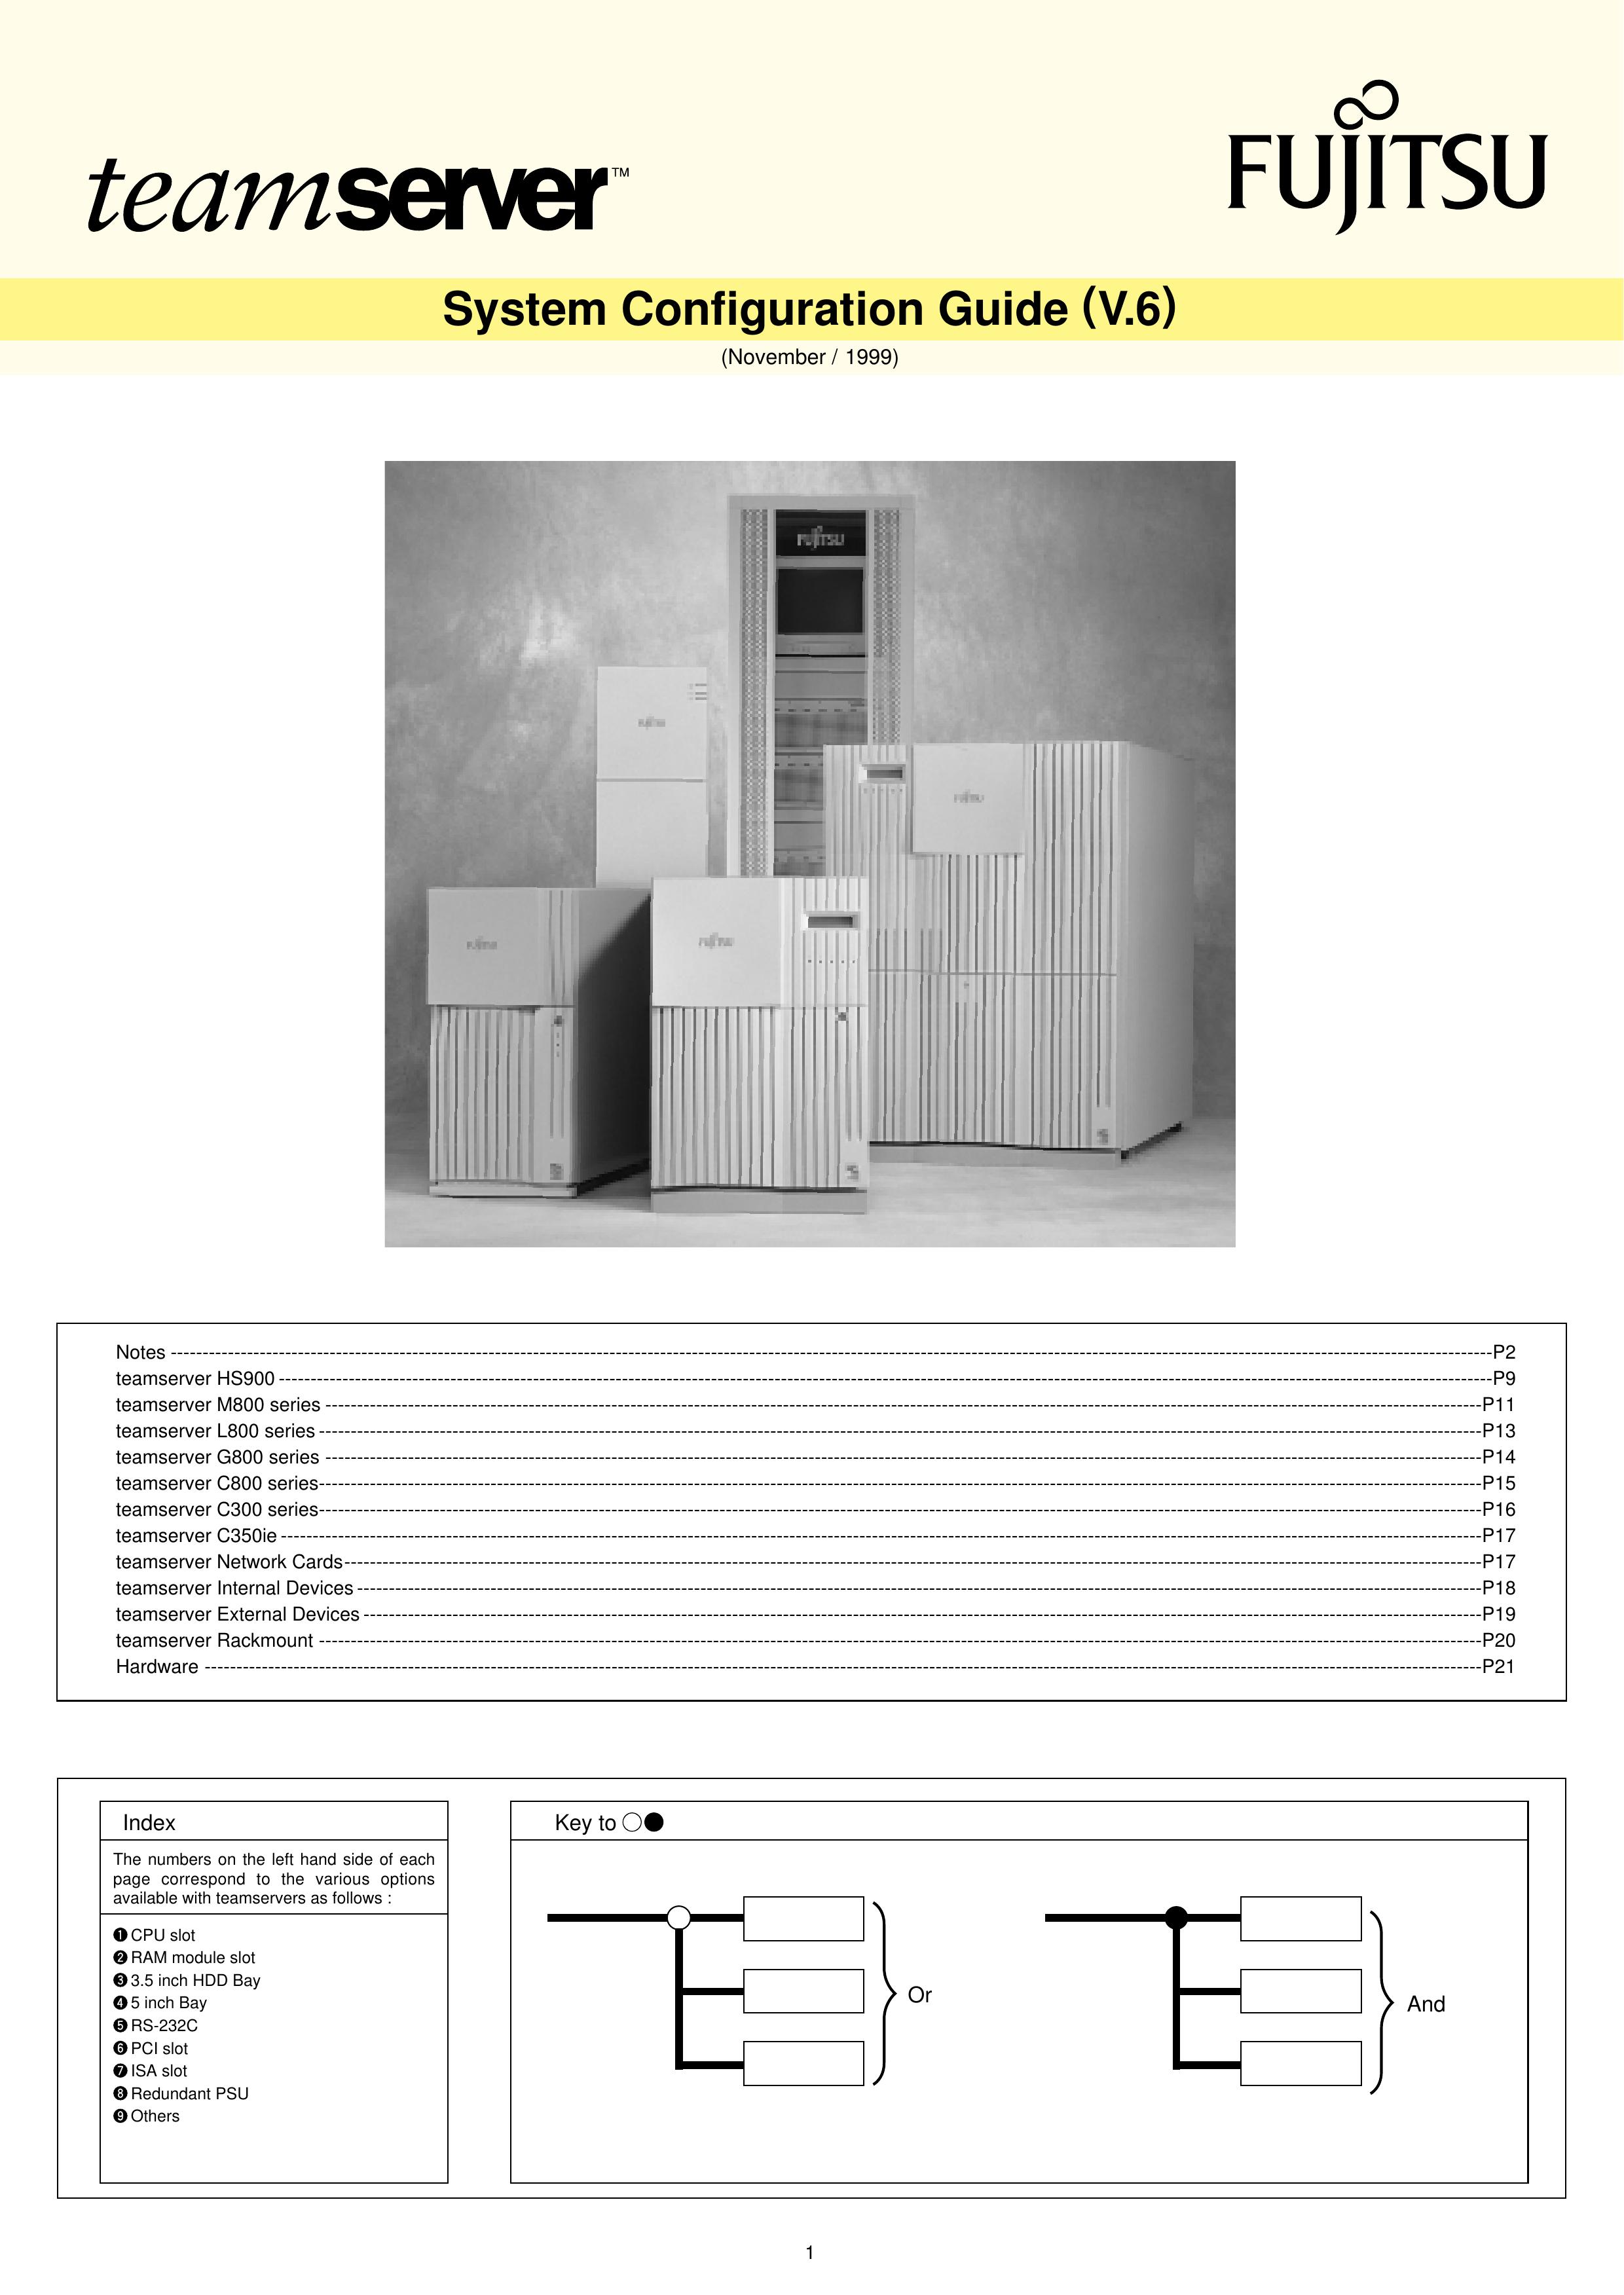 Fujitsu HS900 Marine Sanitation System User Manual